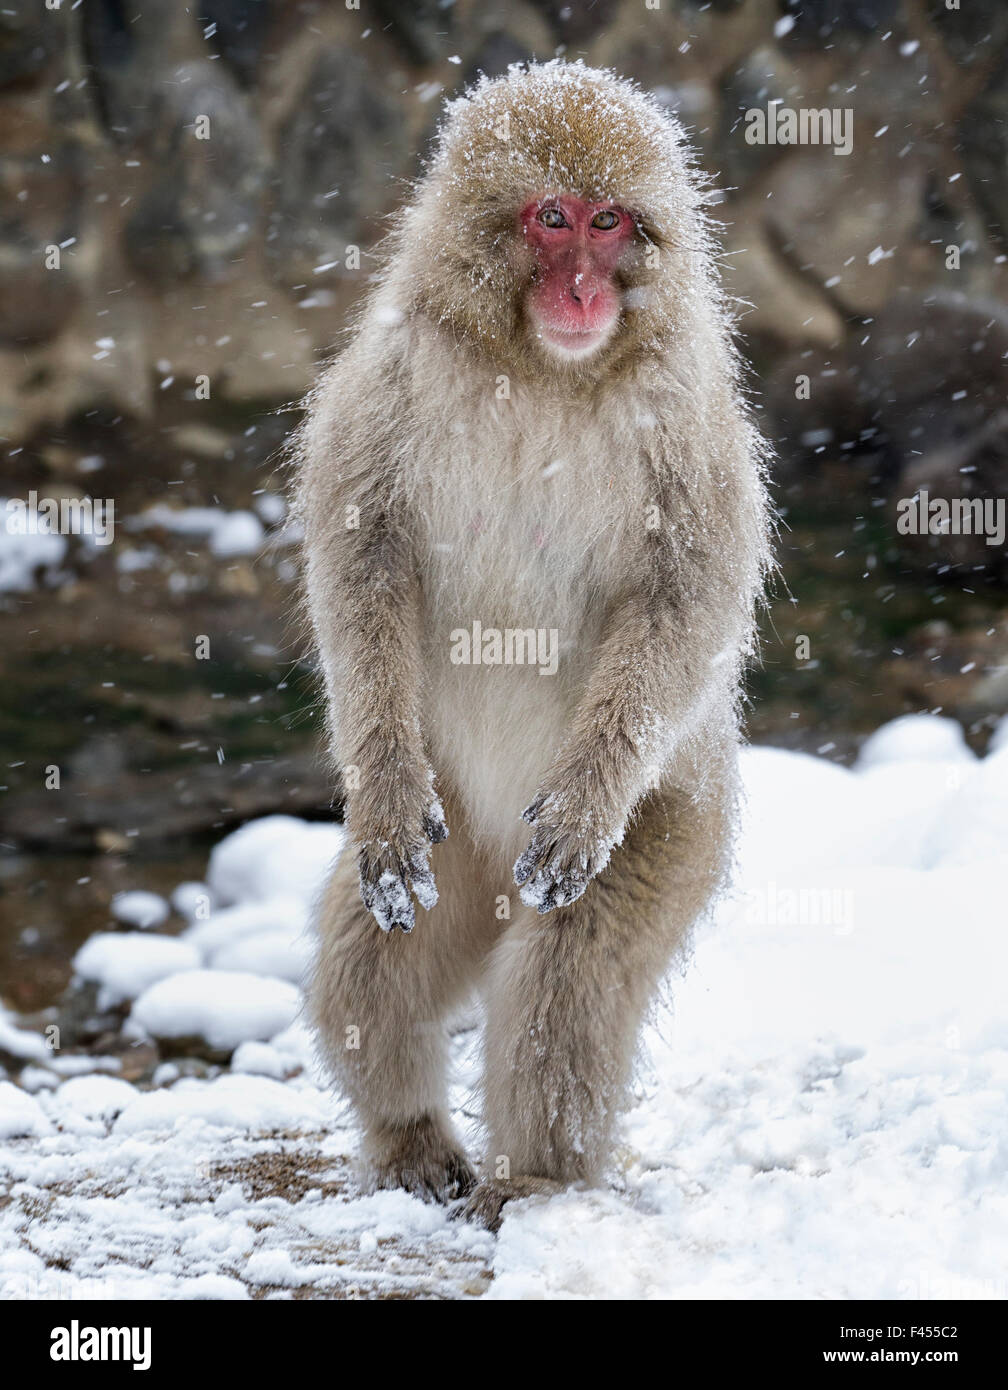 Macaque giapponese (Macaca fuscata) femmina in piedi sulle zampe posteriori nella neve, Jigokudani, Giappone. Febbraio Foto Stock